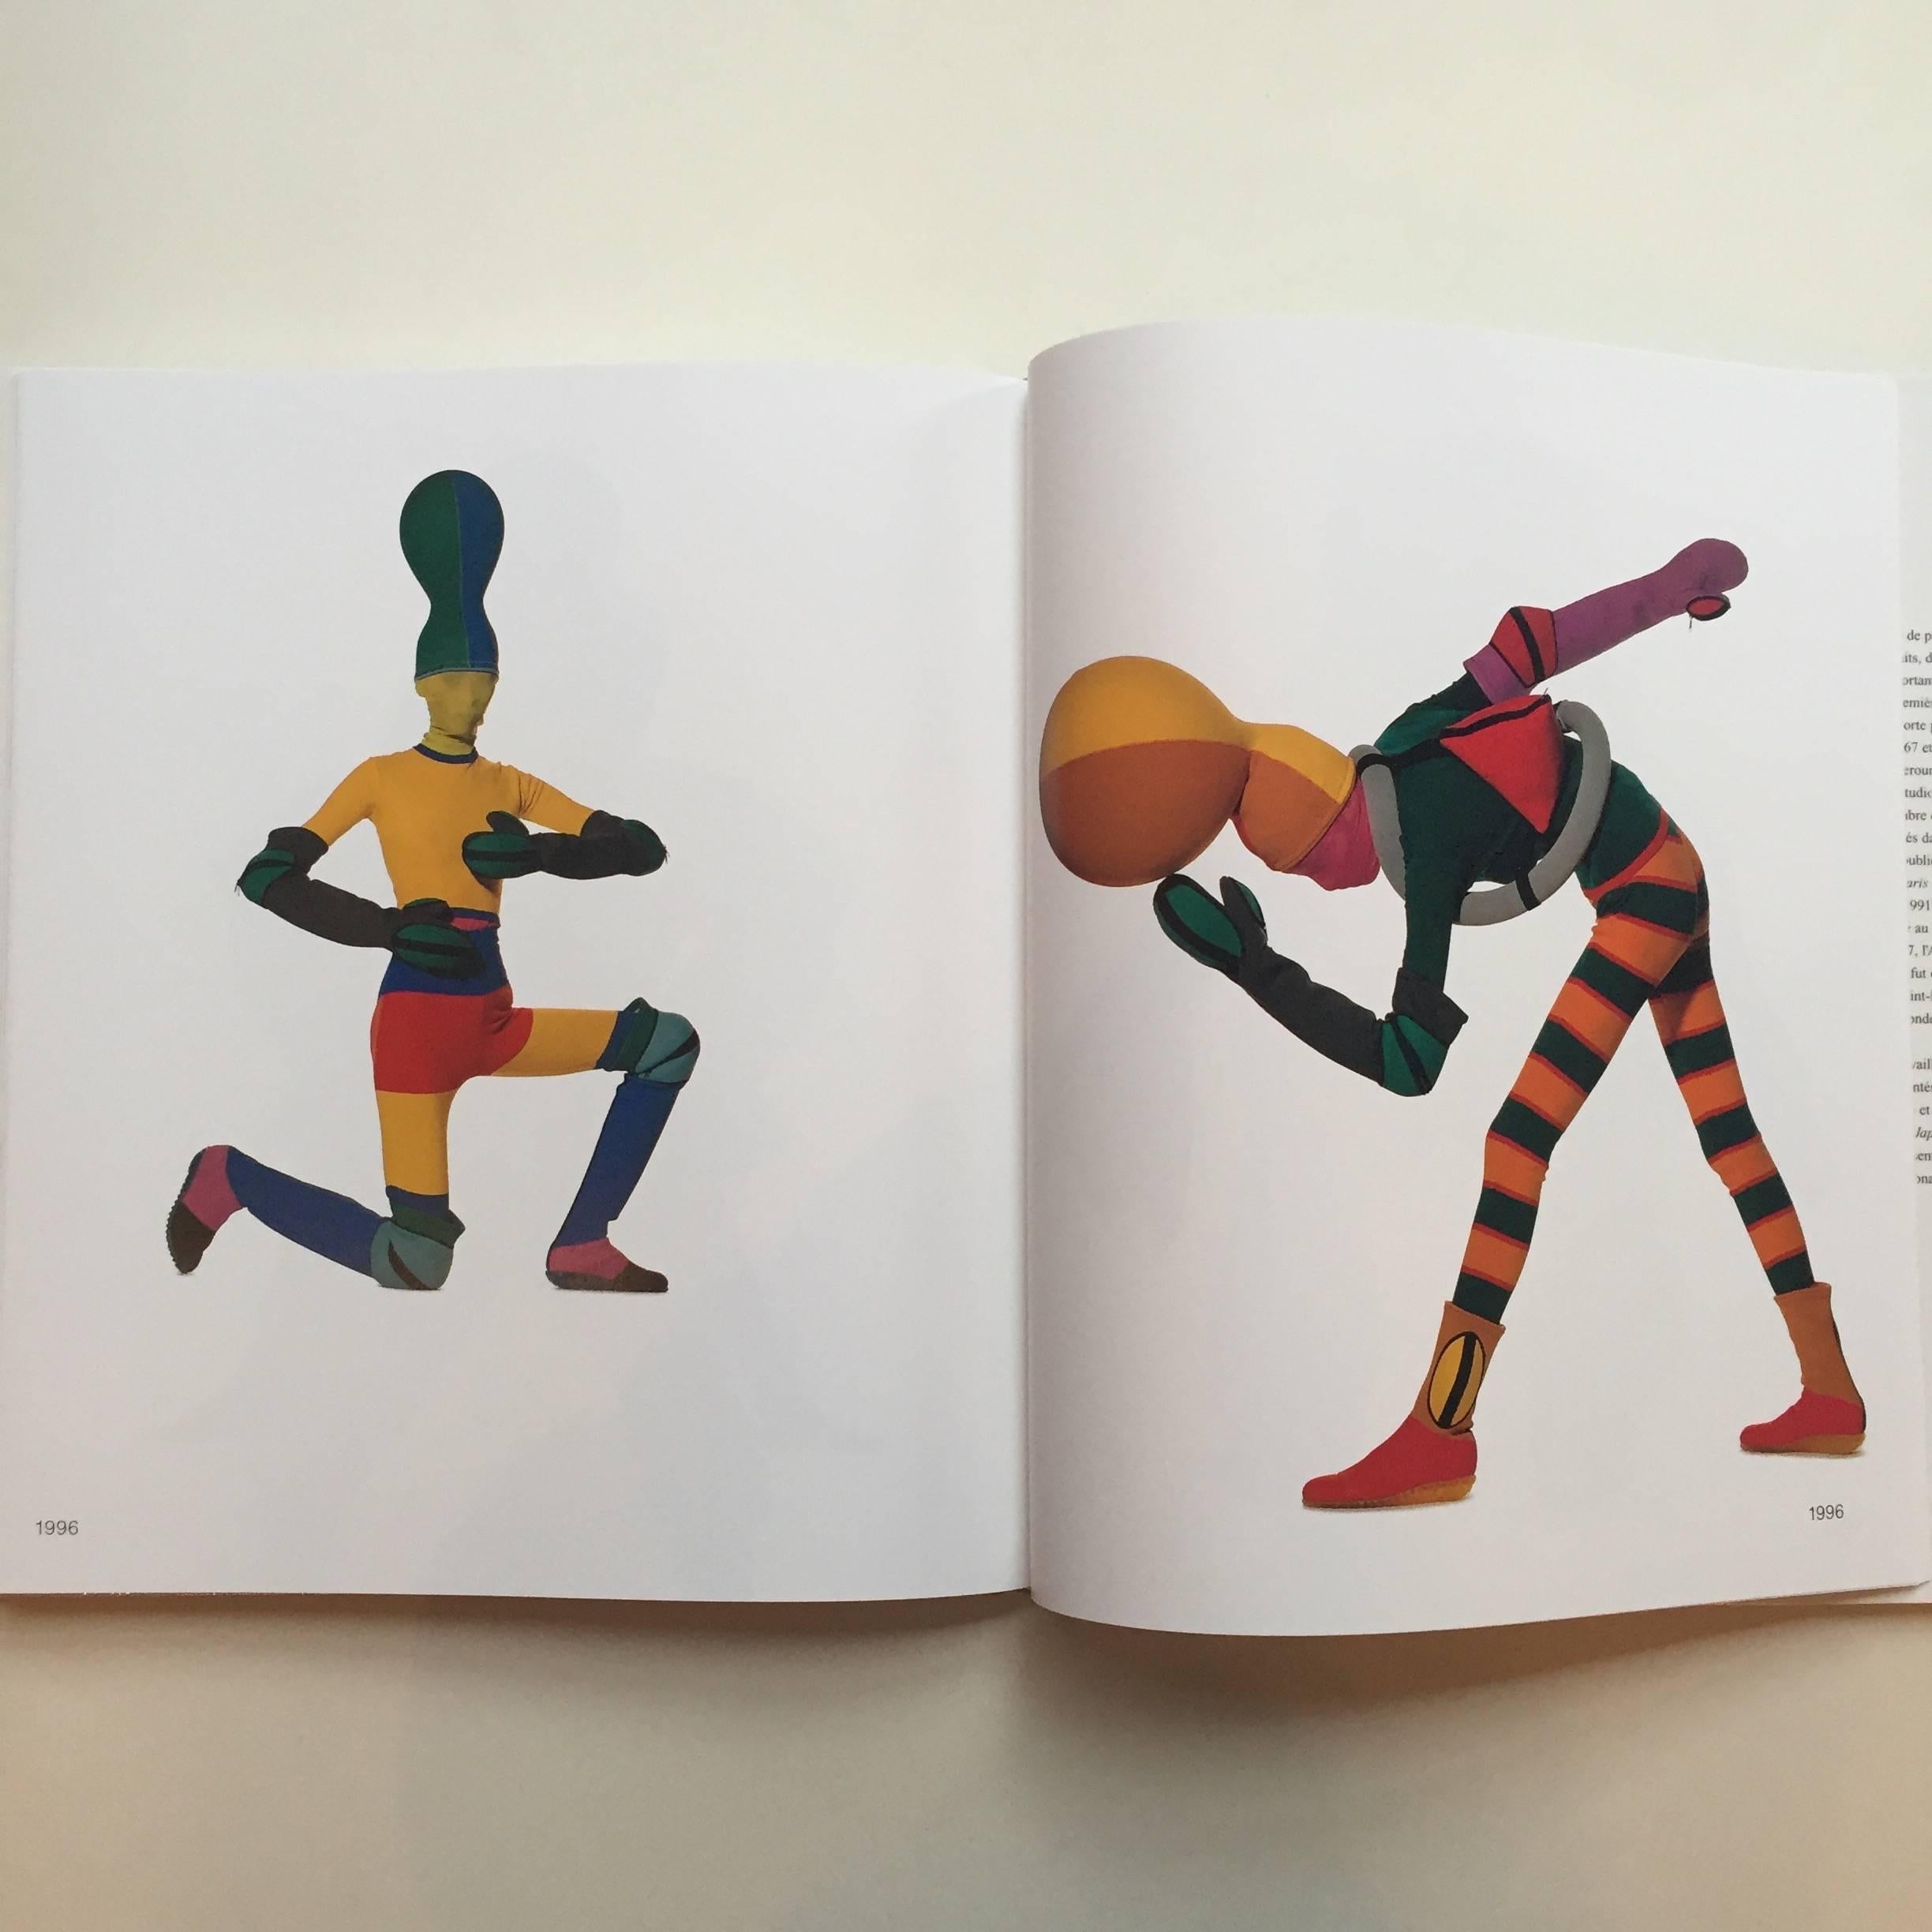 Première édition, publiée par Little, Brown & Company, 1988

Irving Penn s'empare de l'œuvre d'Issey Miyake. Ce livre explore la relation artistique entre Penn, l'un des photographes les plus éminents du XXe siècle, et Miyake, l'emblématique